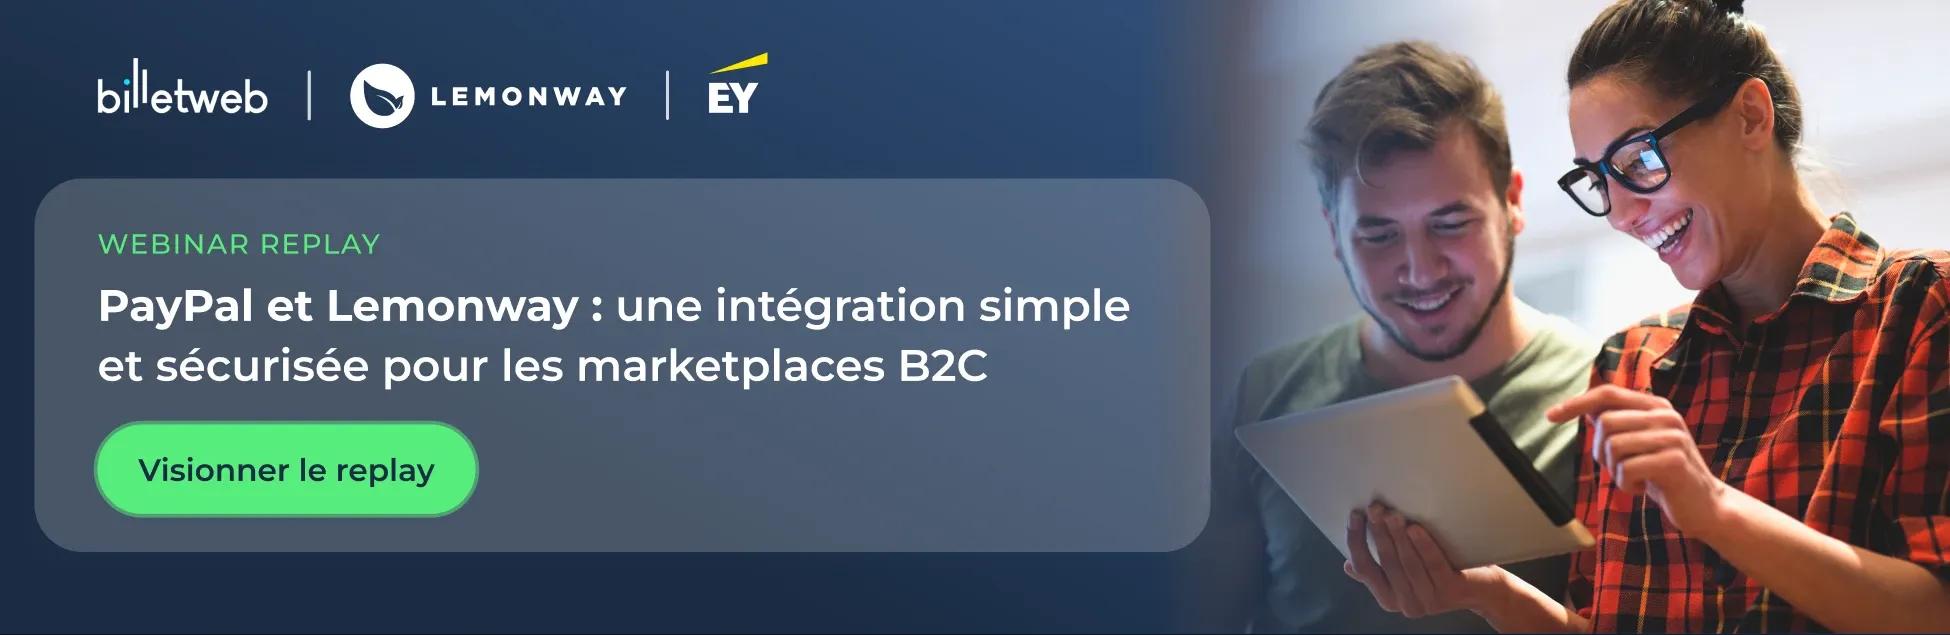 Replay webinar PayPal et Lemonway : une intégration simple et sécurisée pour les marketplaces B2C